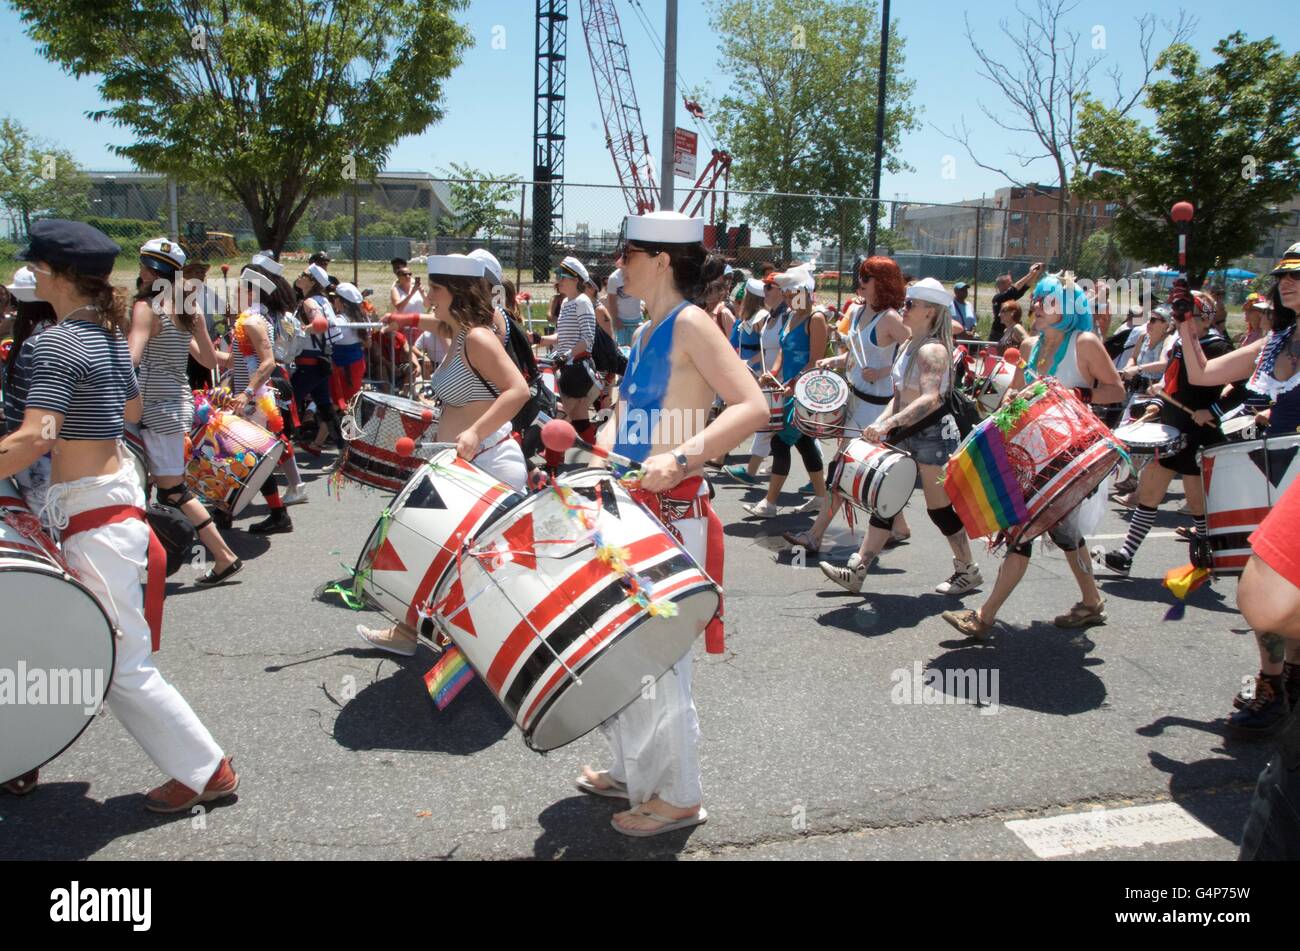 Coney Island, Nueva York, Estados Unidos. 18 de junio de 2016. mermaid parade Coney Island 2016 brooklyn Simon Leigh, Nueva York, EE.UU. Crédito: Simon leigh/Alamy Live News Foto de stock